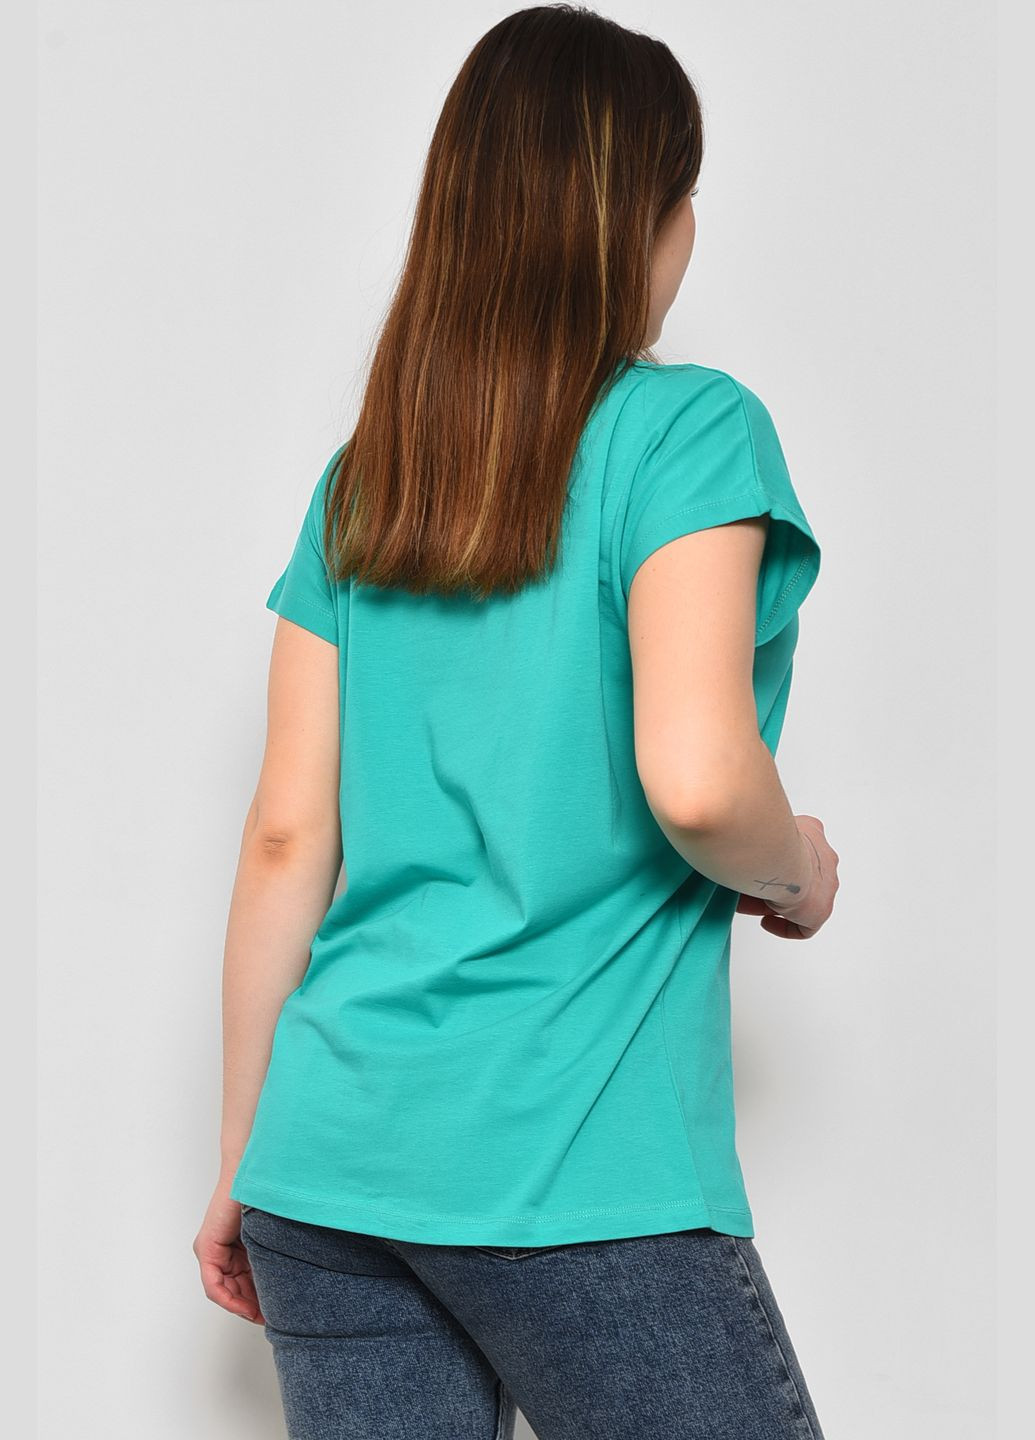 Зеленая летняя футболка женская полубатальная с надписью зеленого цвета Let's Shop